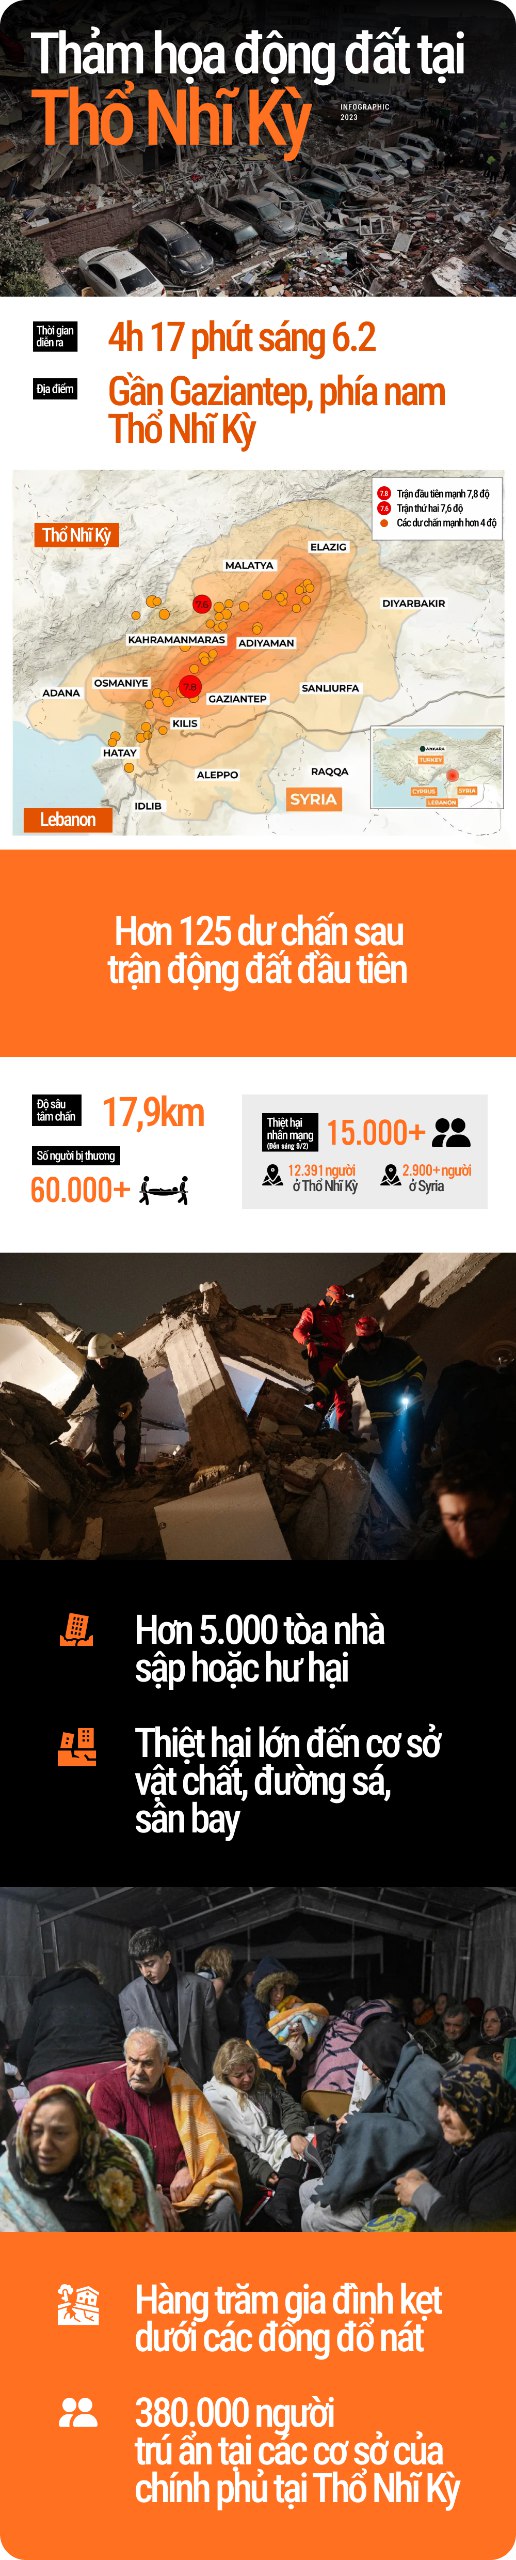 Infographic: Thảm họa động đất ở Thổ Nhĩ Kỳ qua những con số xót xa - Ảnh 1.